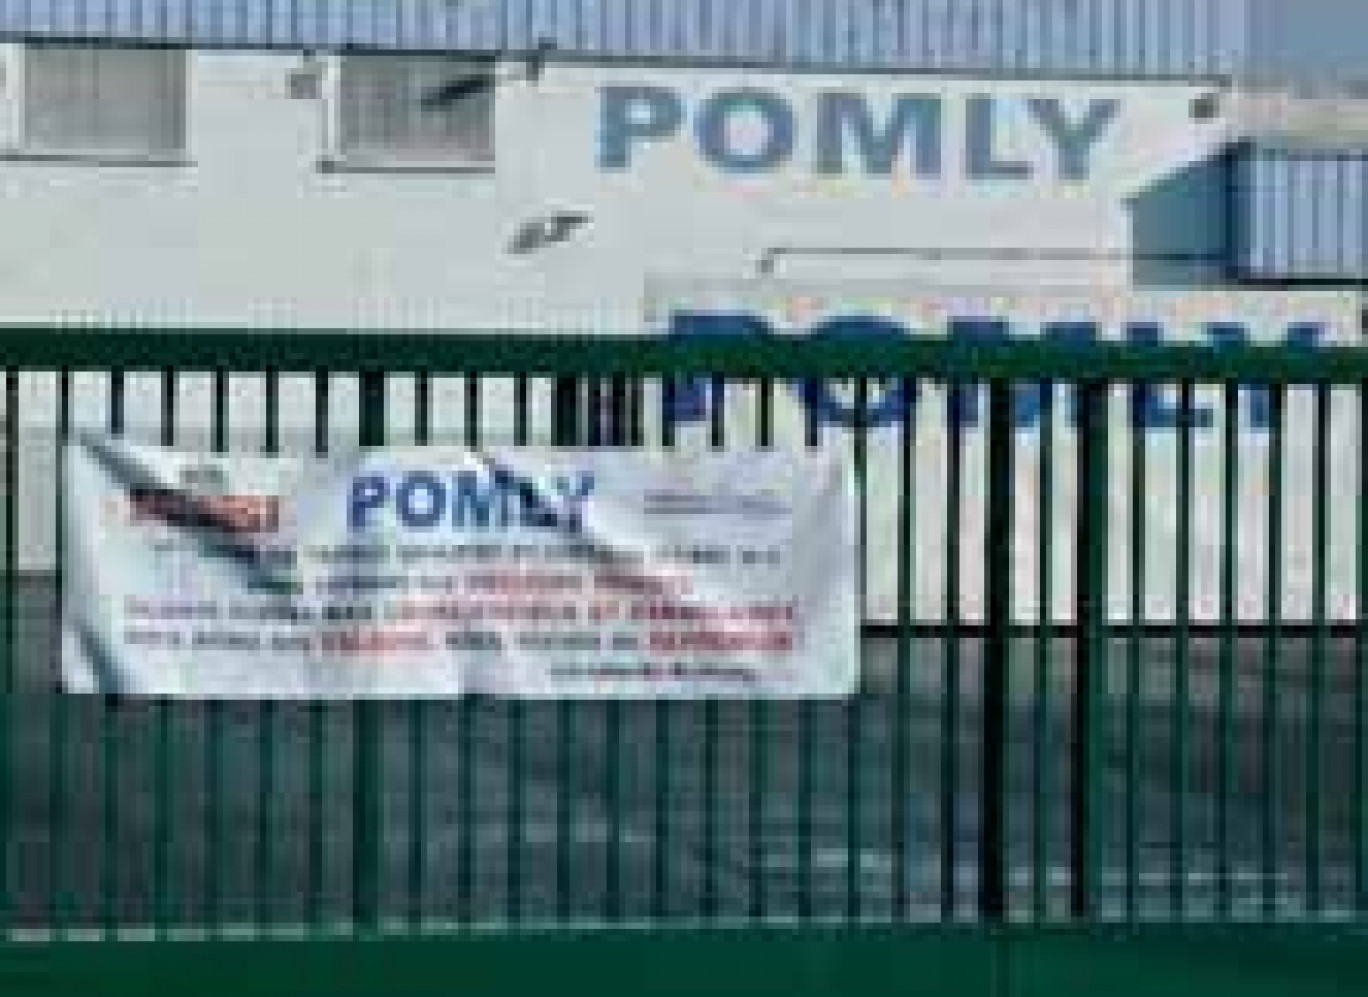 Pomly est une usine du groupe Andros qui fabrique des yaourts.